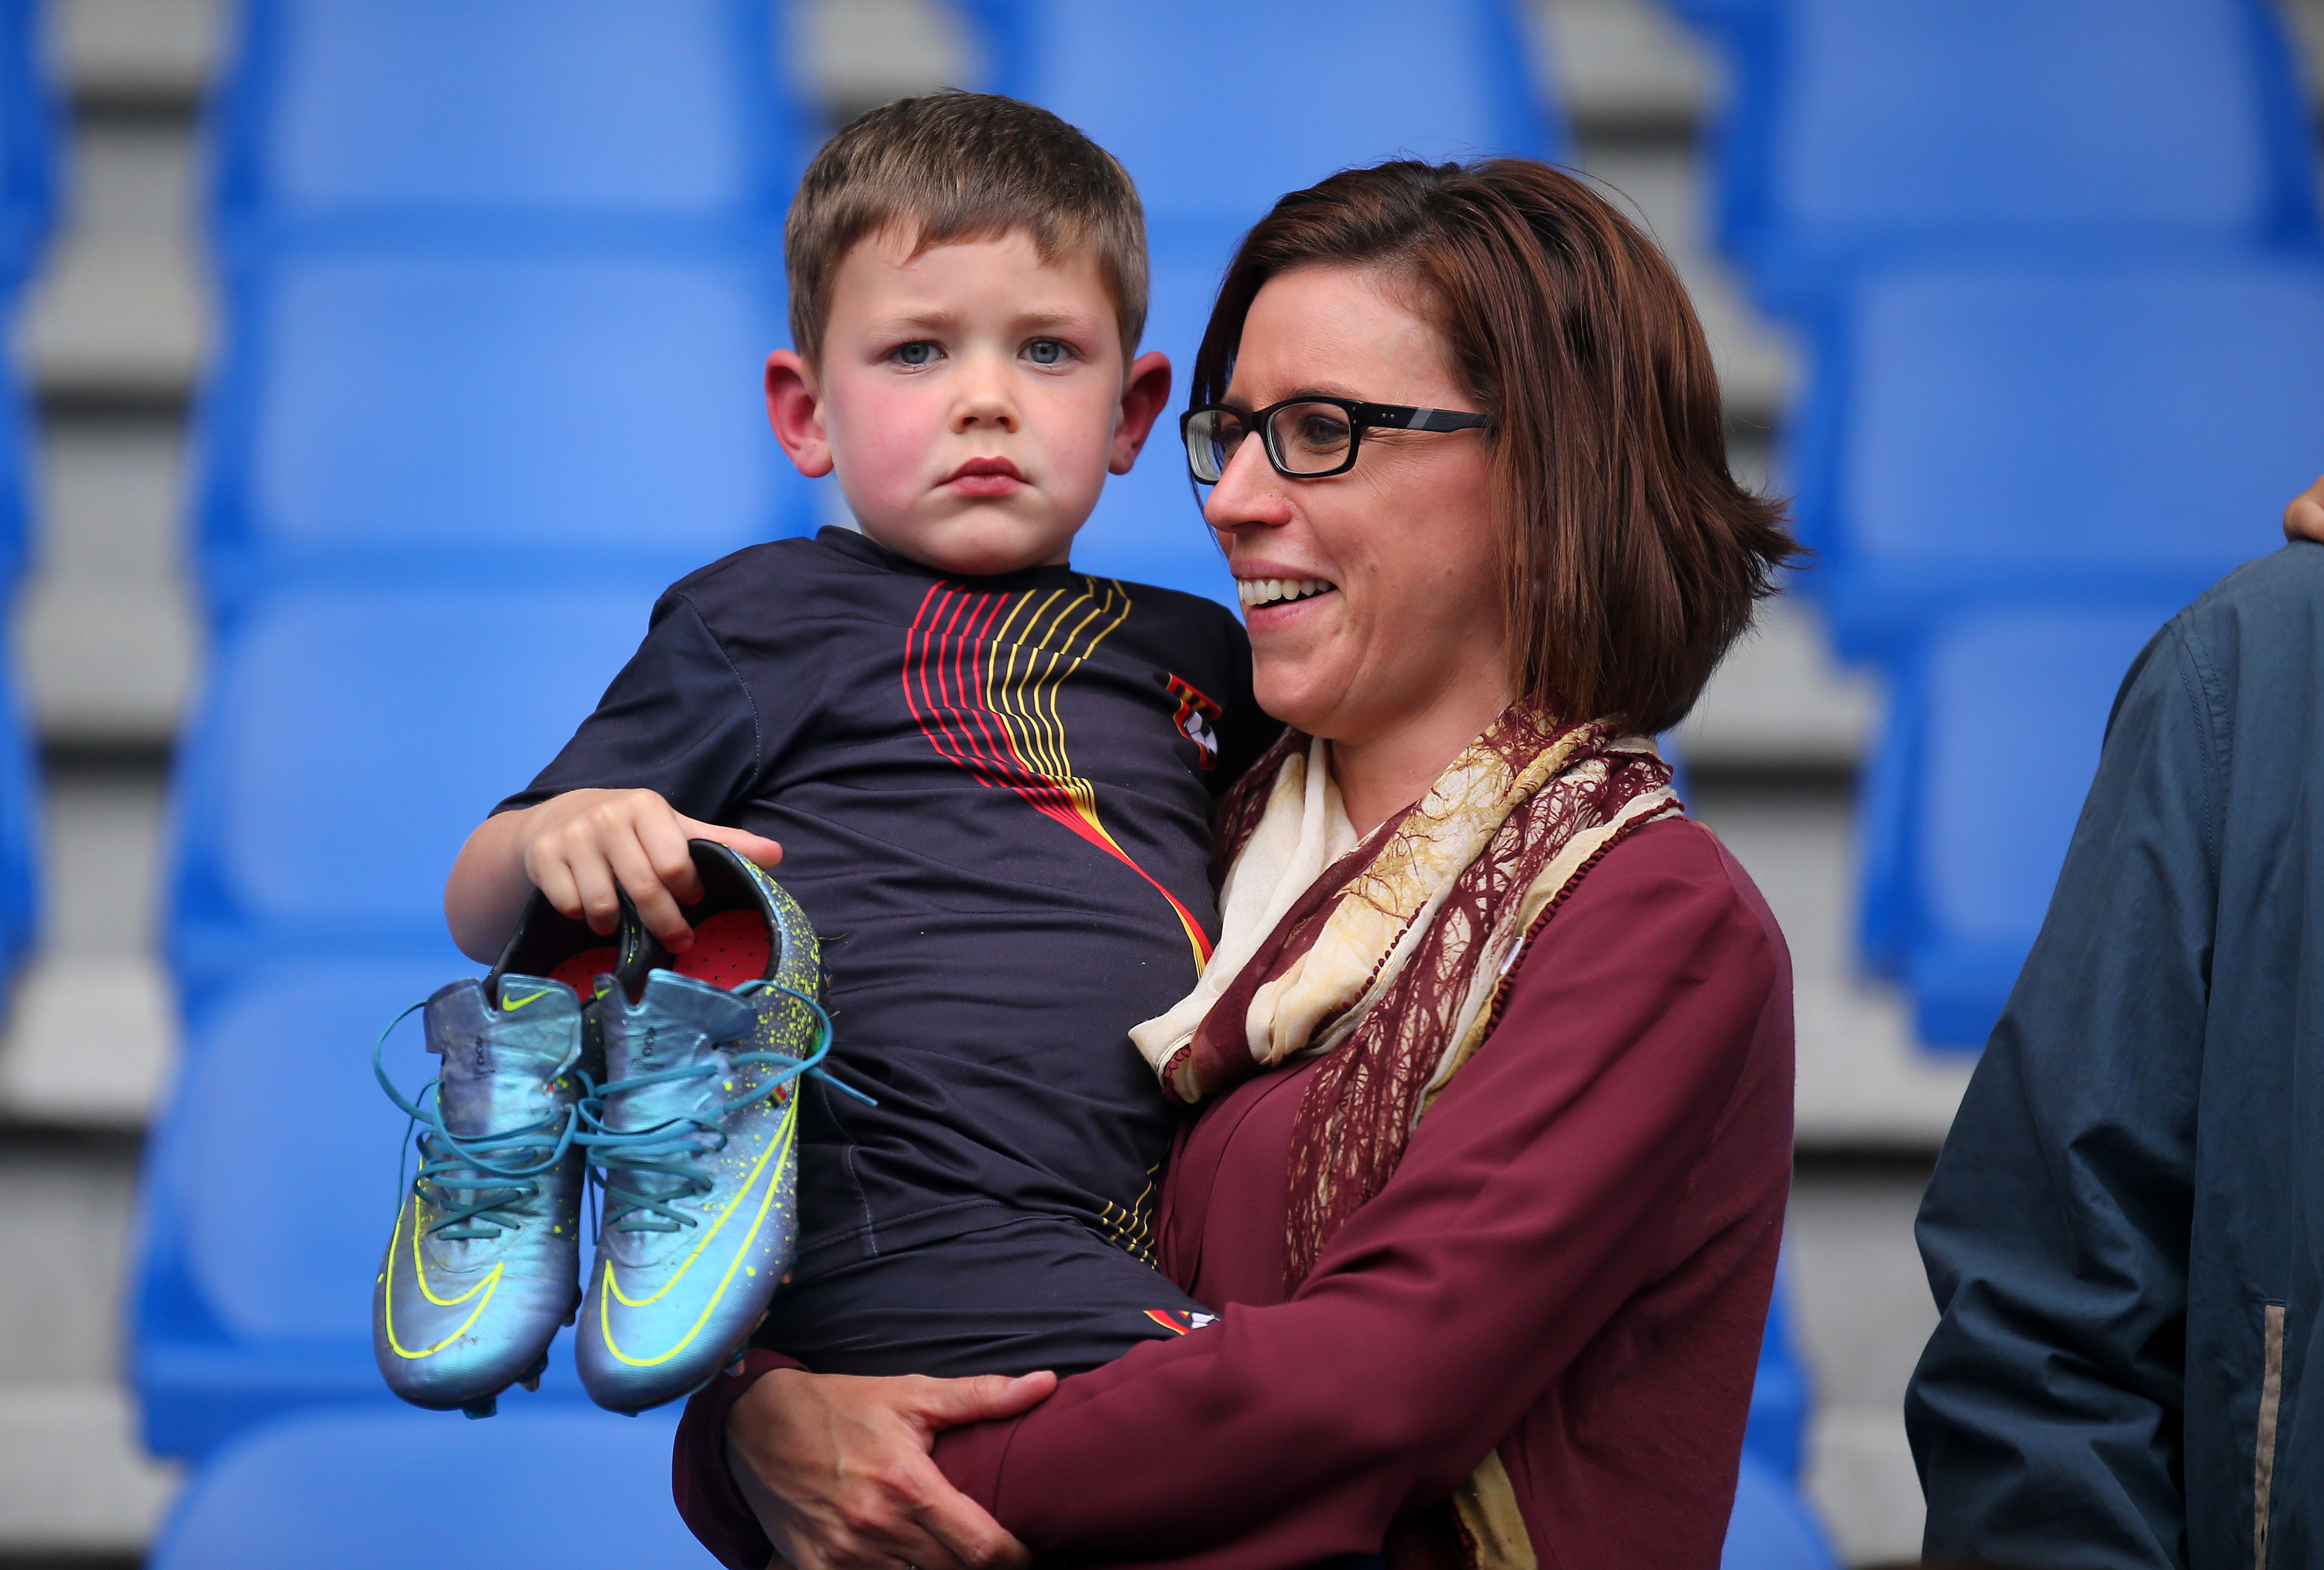 zwaarlijvigheid sofa volwassen Simon uit Zonhoven krijgt voetbalschoenen van Hazard | Het Belang van  Limburg Mobile